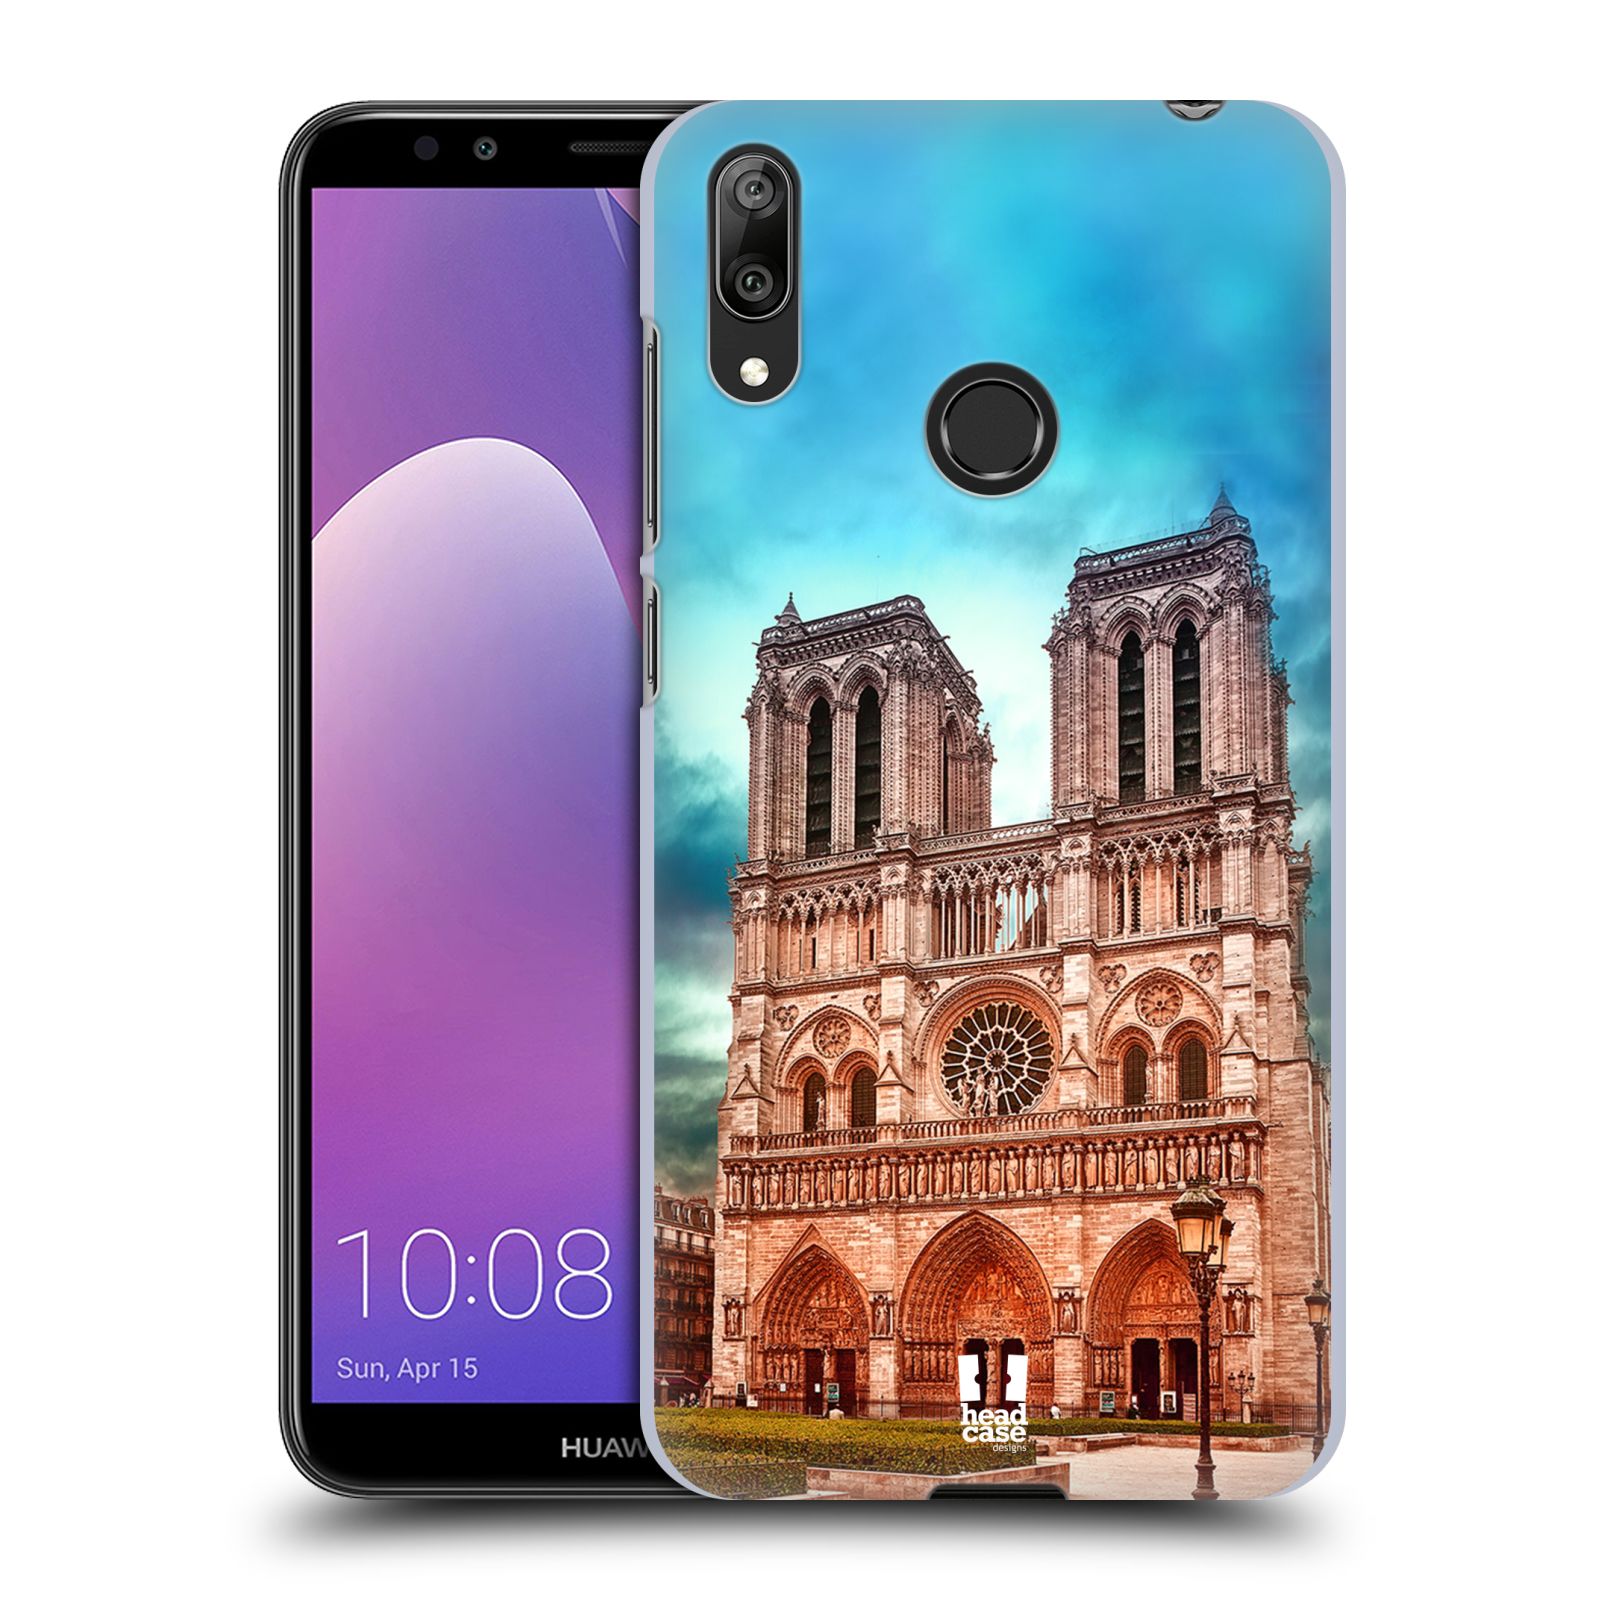 Pouzdro na mobil Huawei Y7 2019 - HEAD CASE - historická místa katedrála Notre Dame